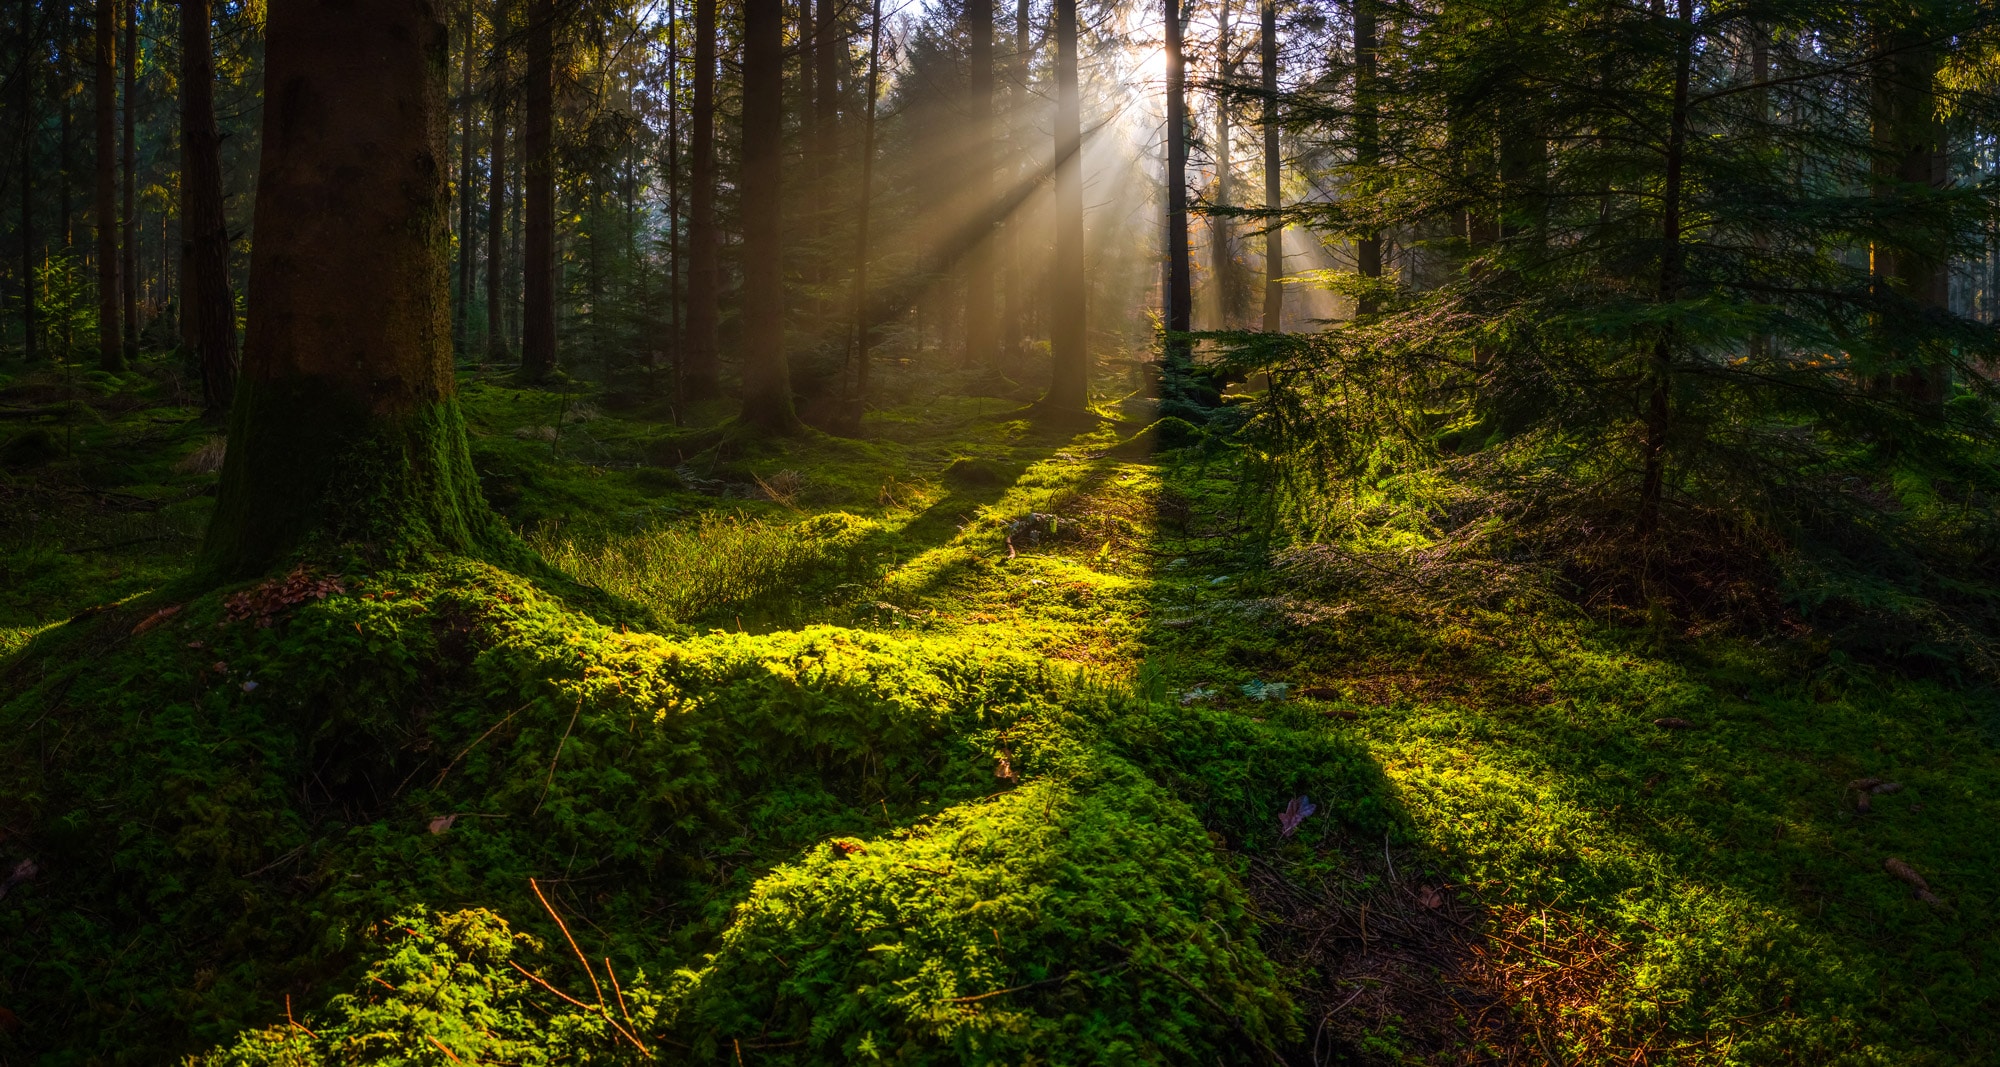 Clairière dans les bois illuminée de rayons solaires - la bellenergie